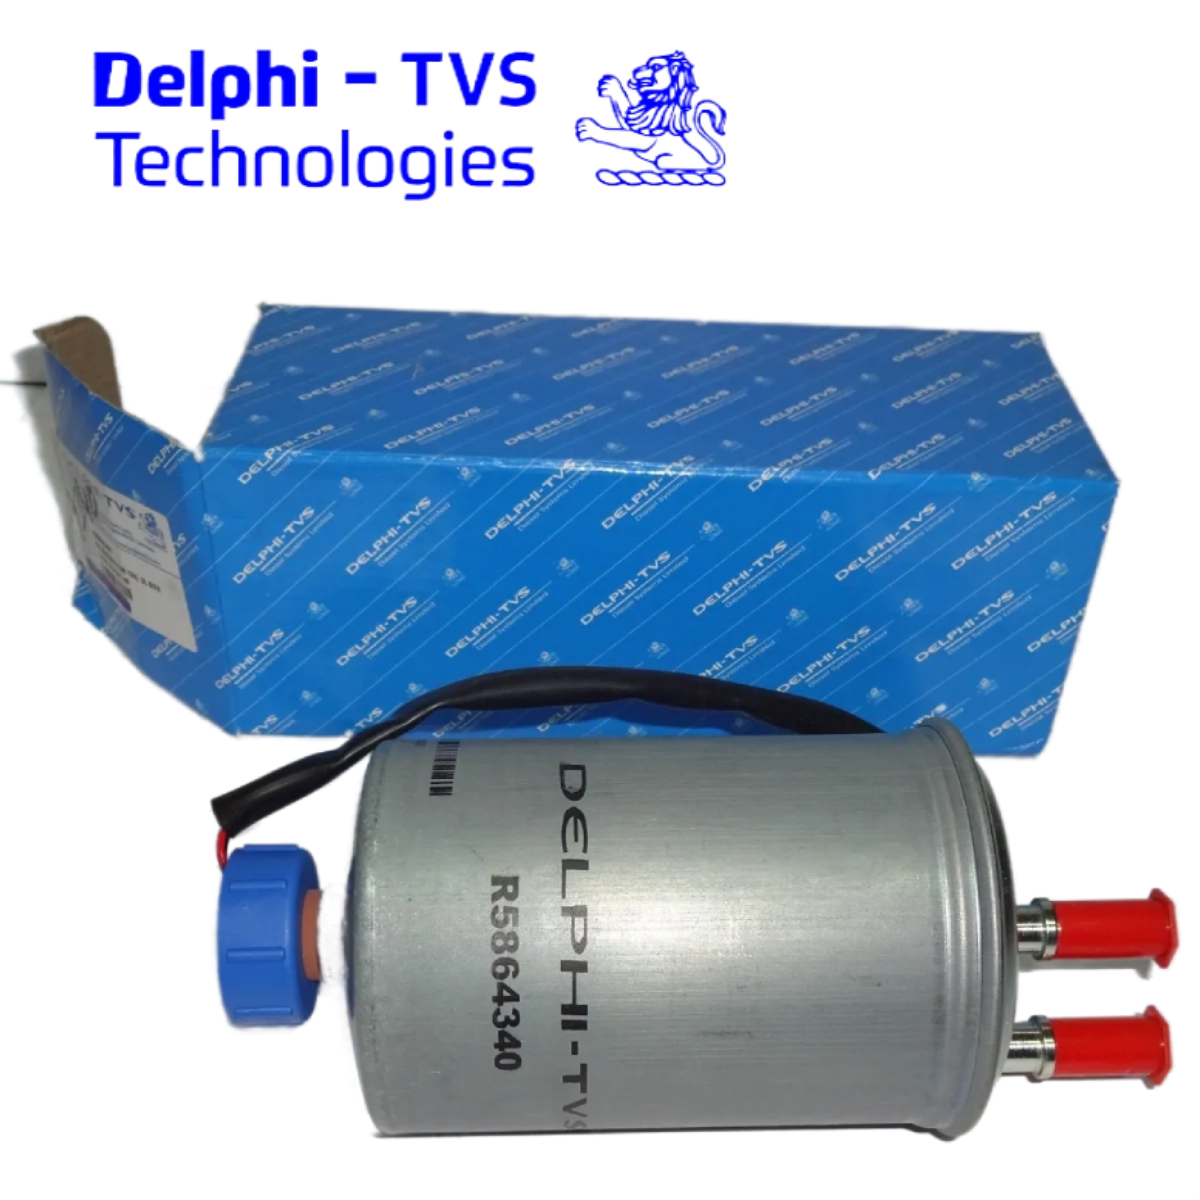 DELPHI 9188-813 Common Rail Fuel Filter - SDS Online Store